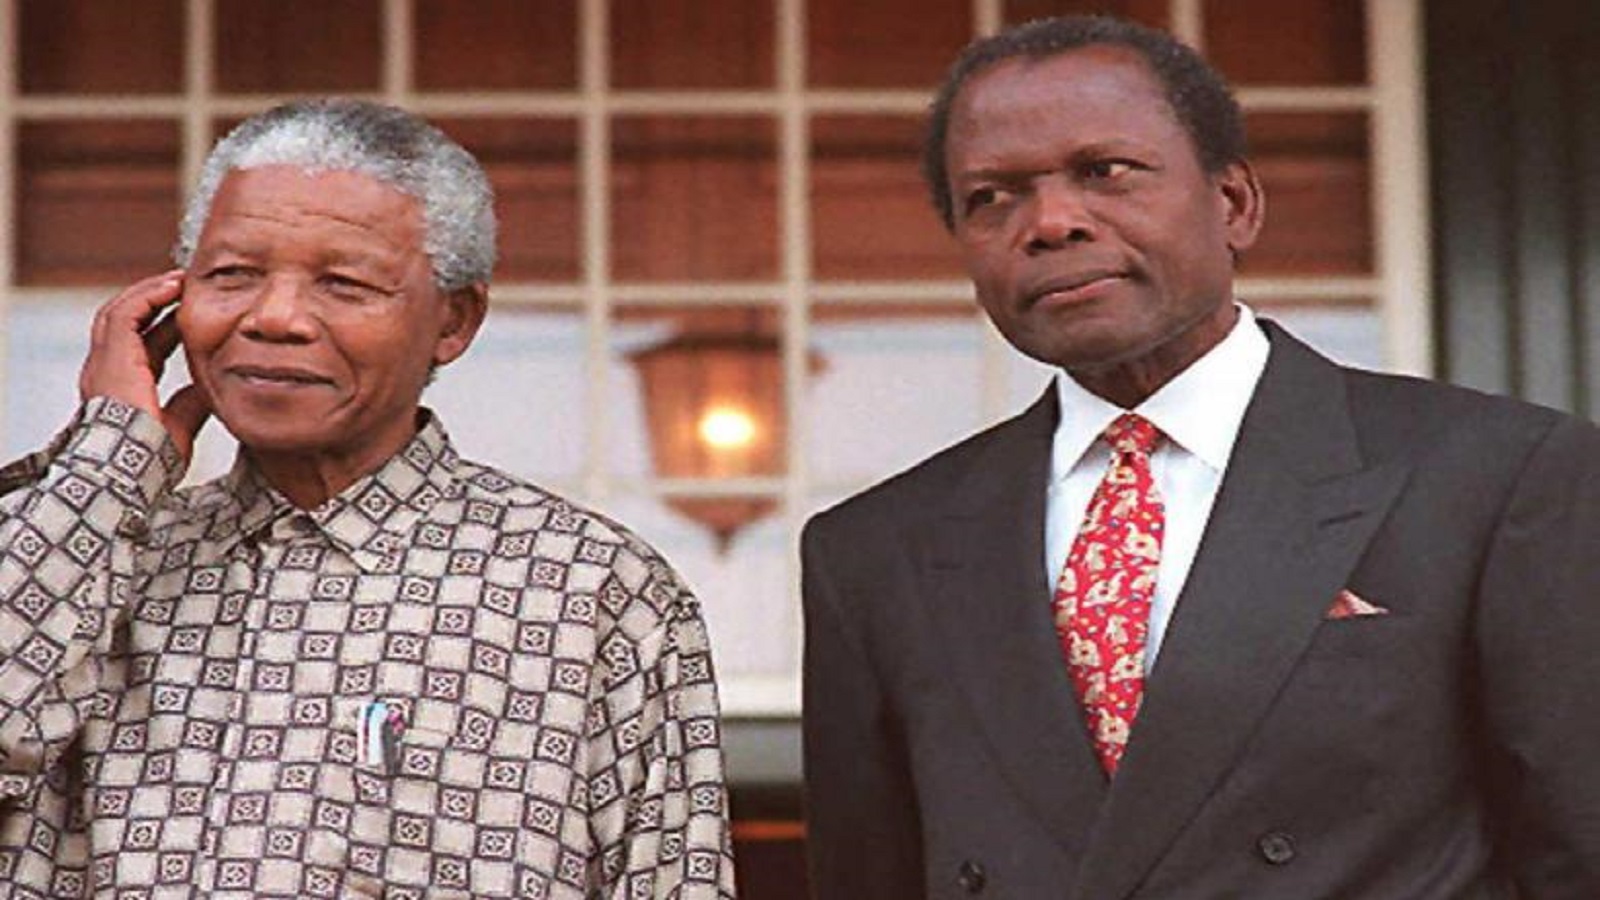 مع نيلسون مانديلا في كيب تاون العام 1996، بعد عام واحد لعب بواتييه دور مانديلا في فيلم تلفزيوني